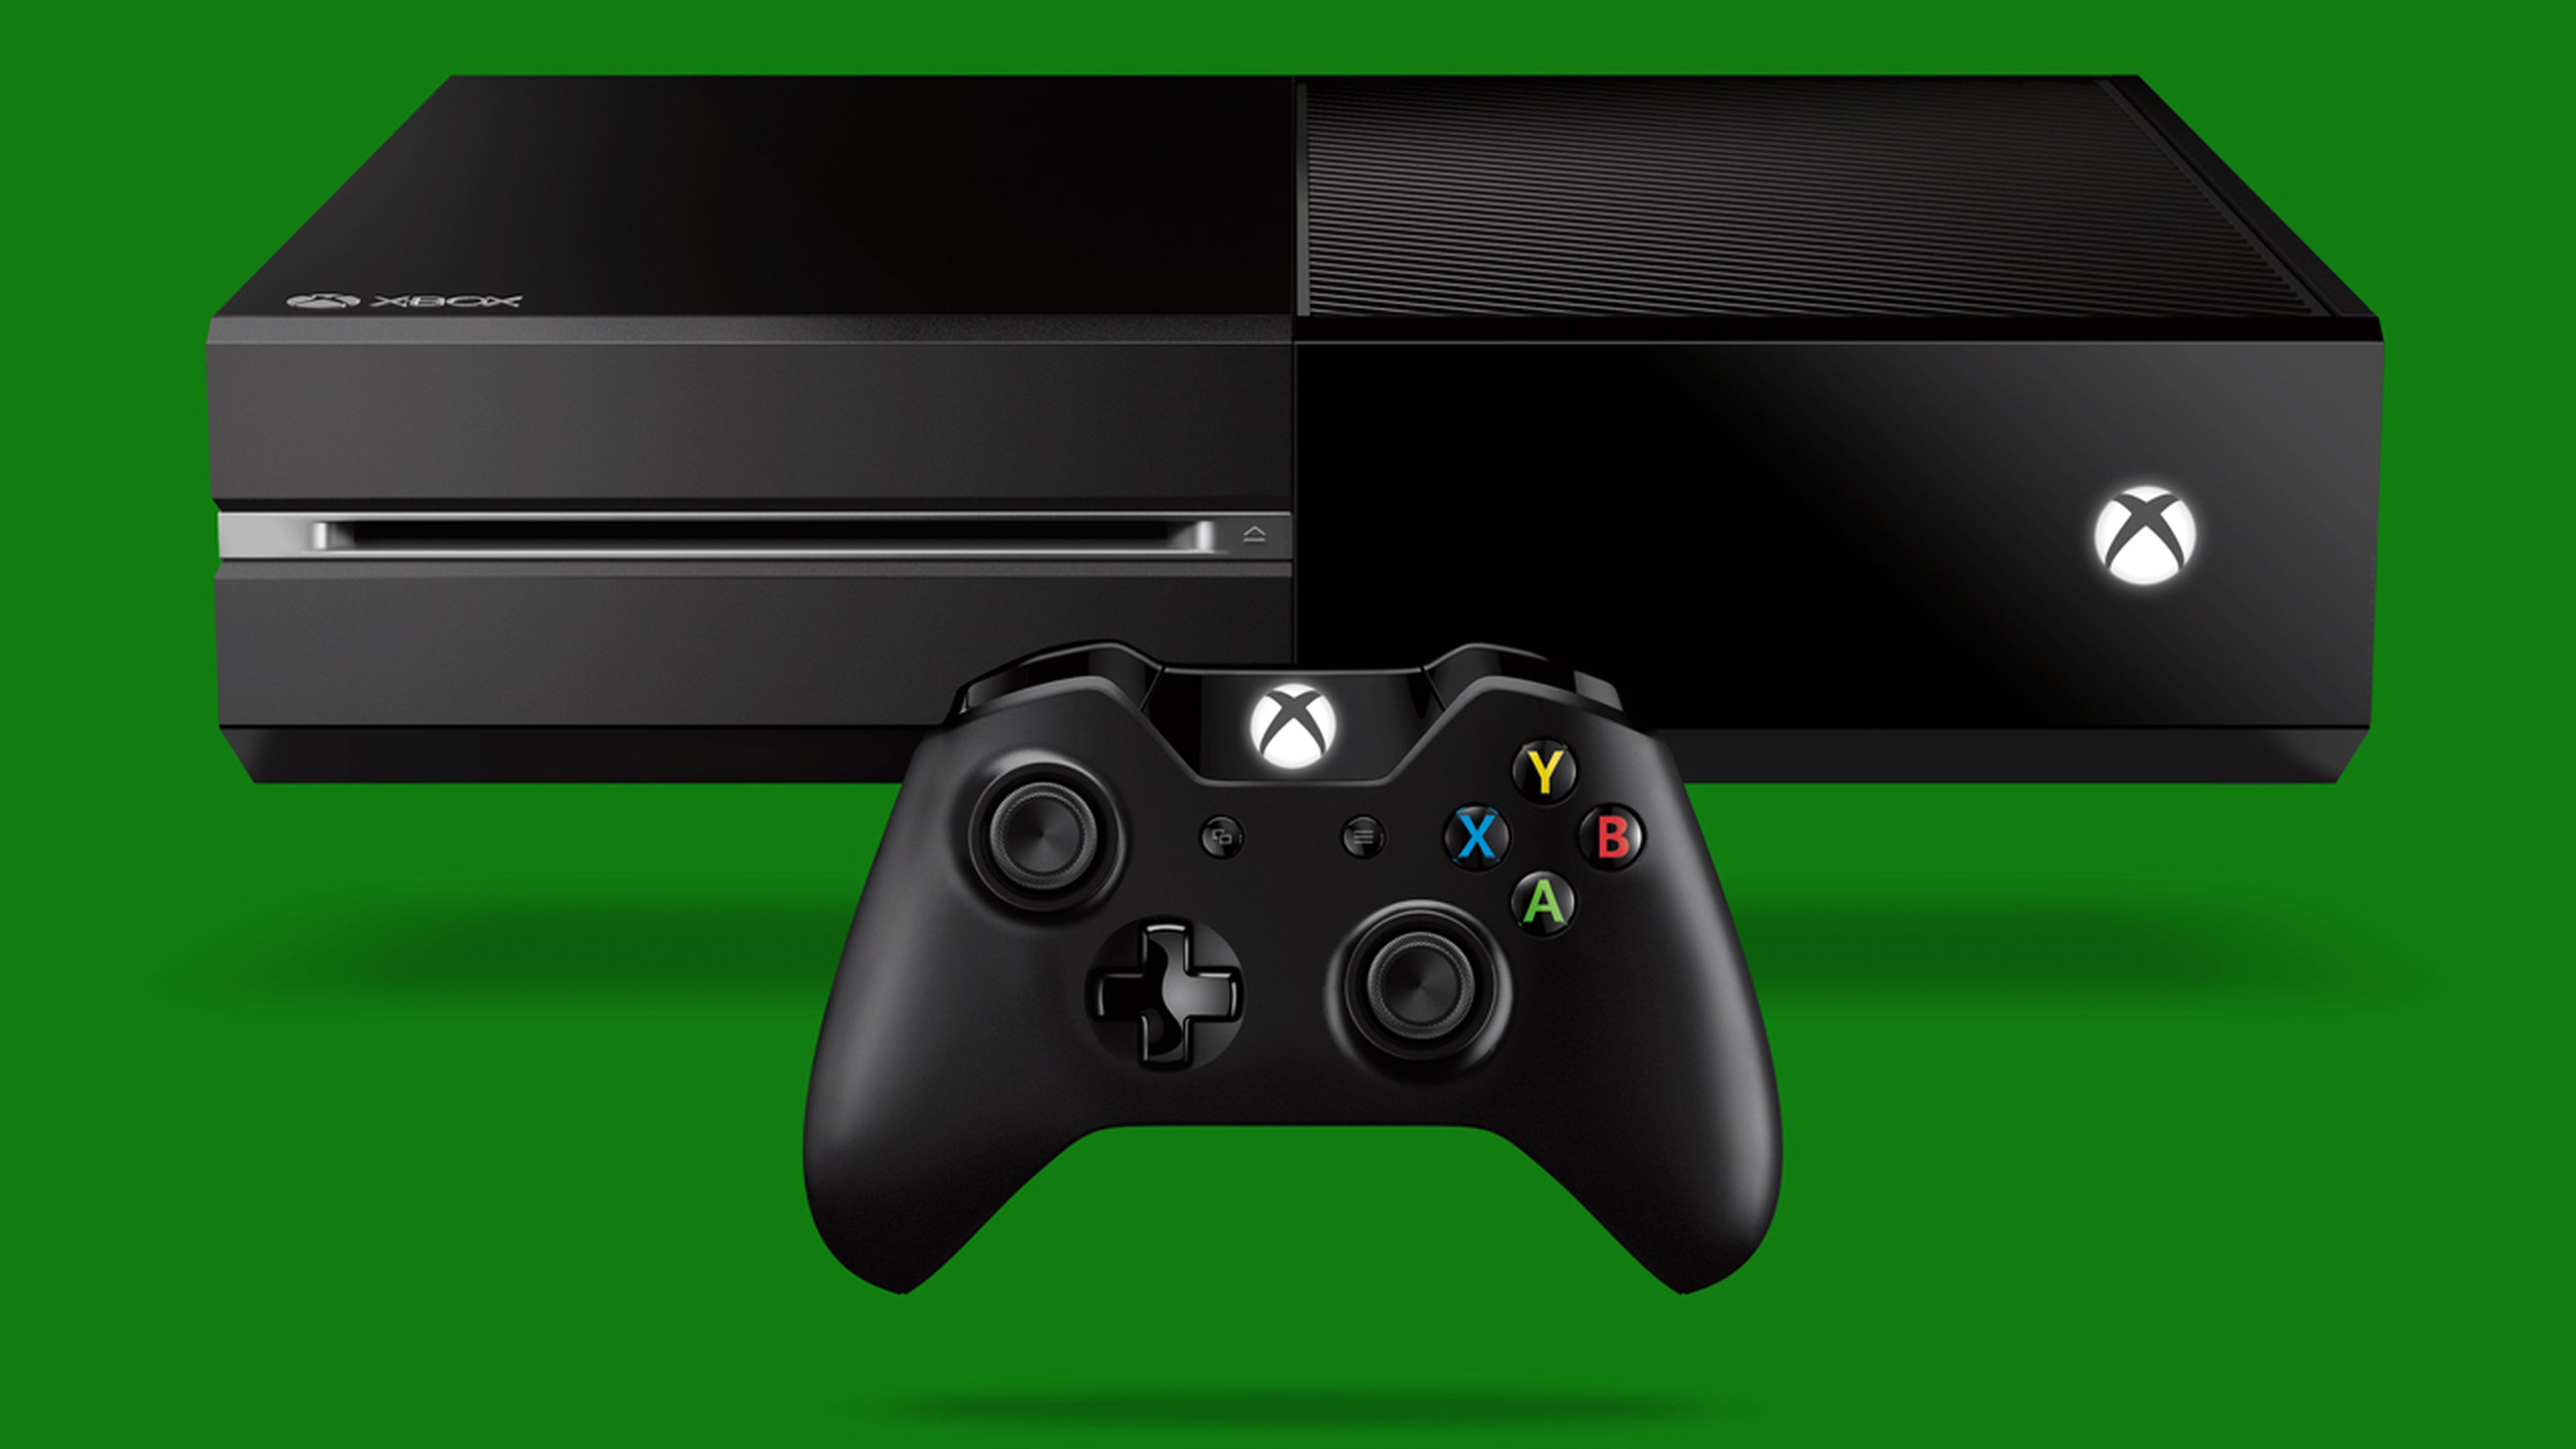 Xbox One el 30 de noviembre, según FNAC